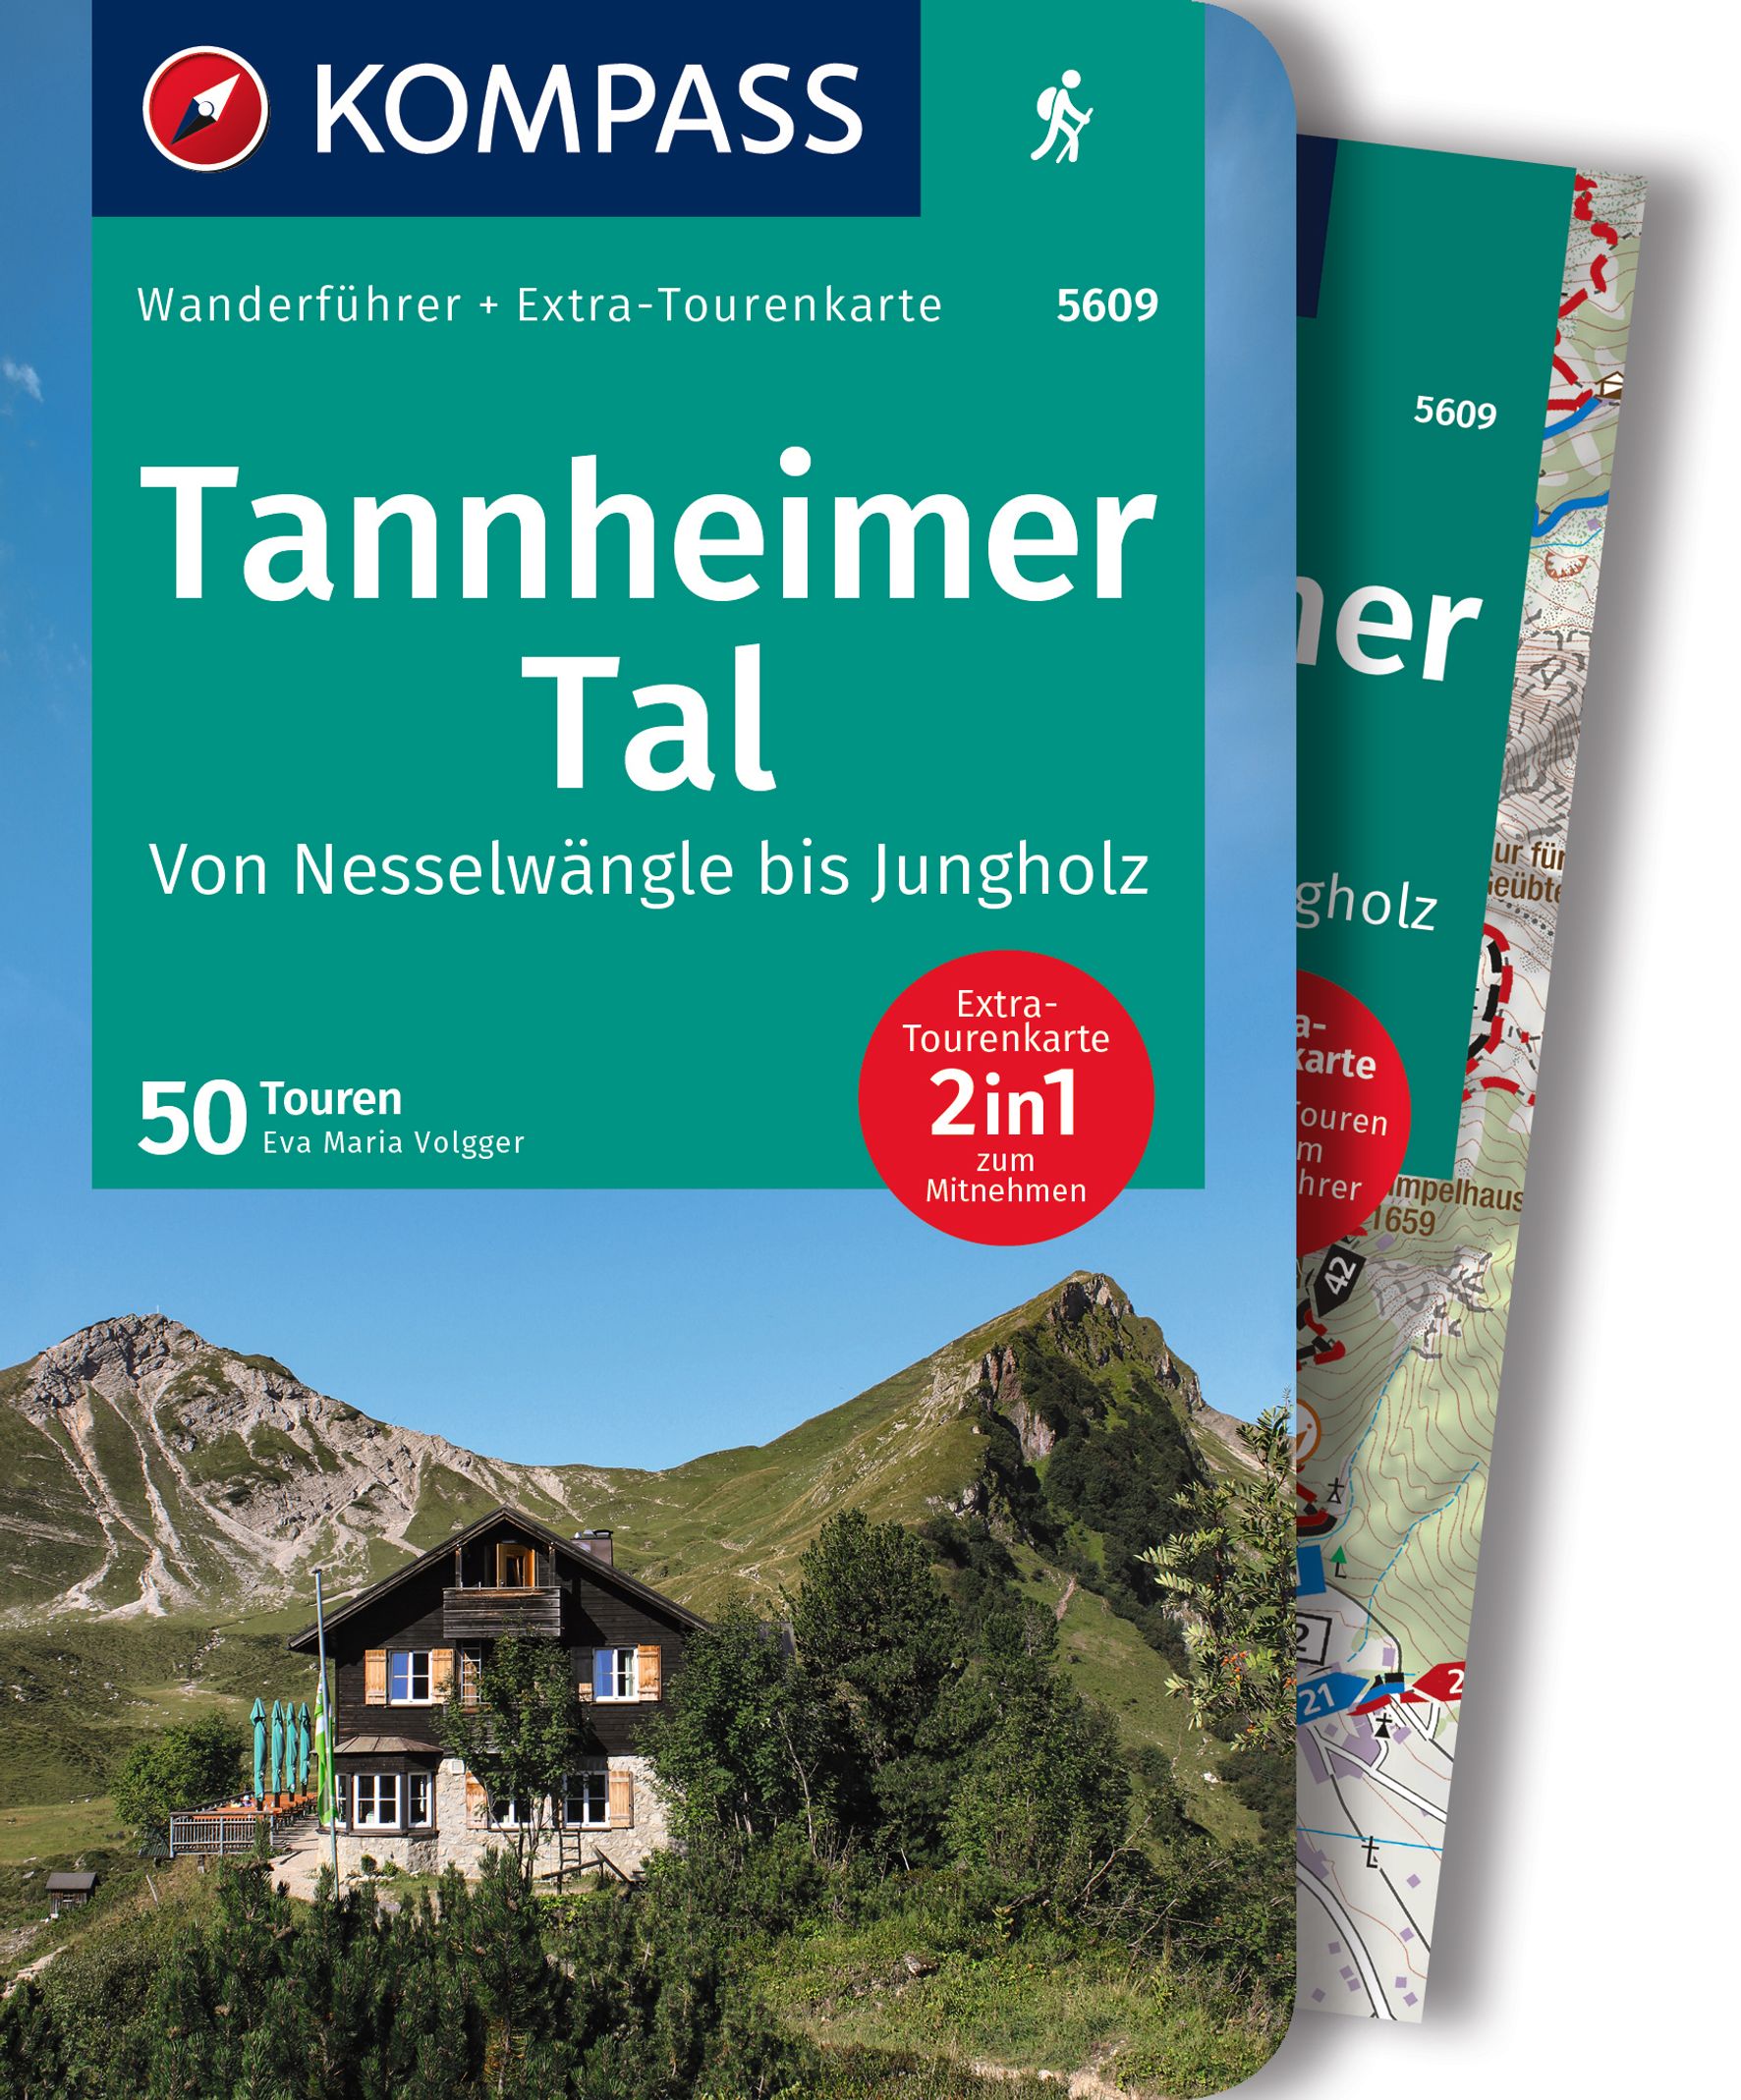 MAIRDUMONT Tannheimer Tal von Nesselwängle bis Jungholz, 50 Touren mit Extra-Tourenkarte